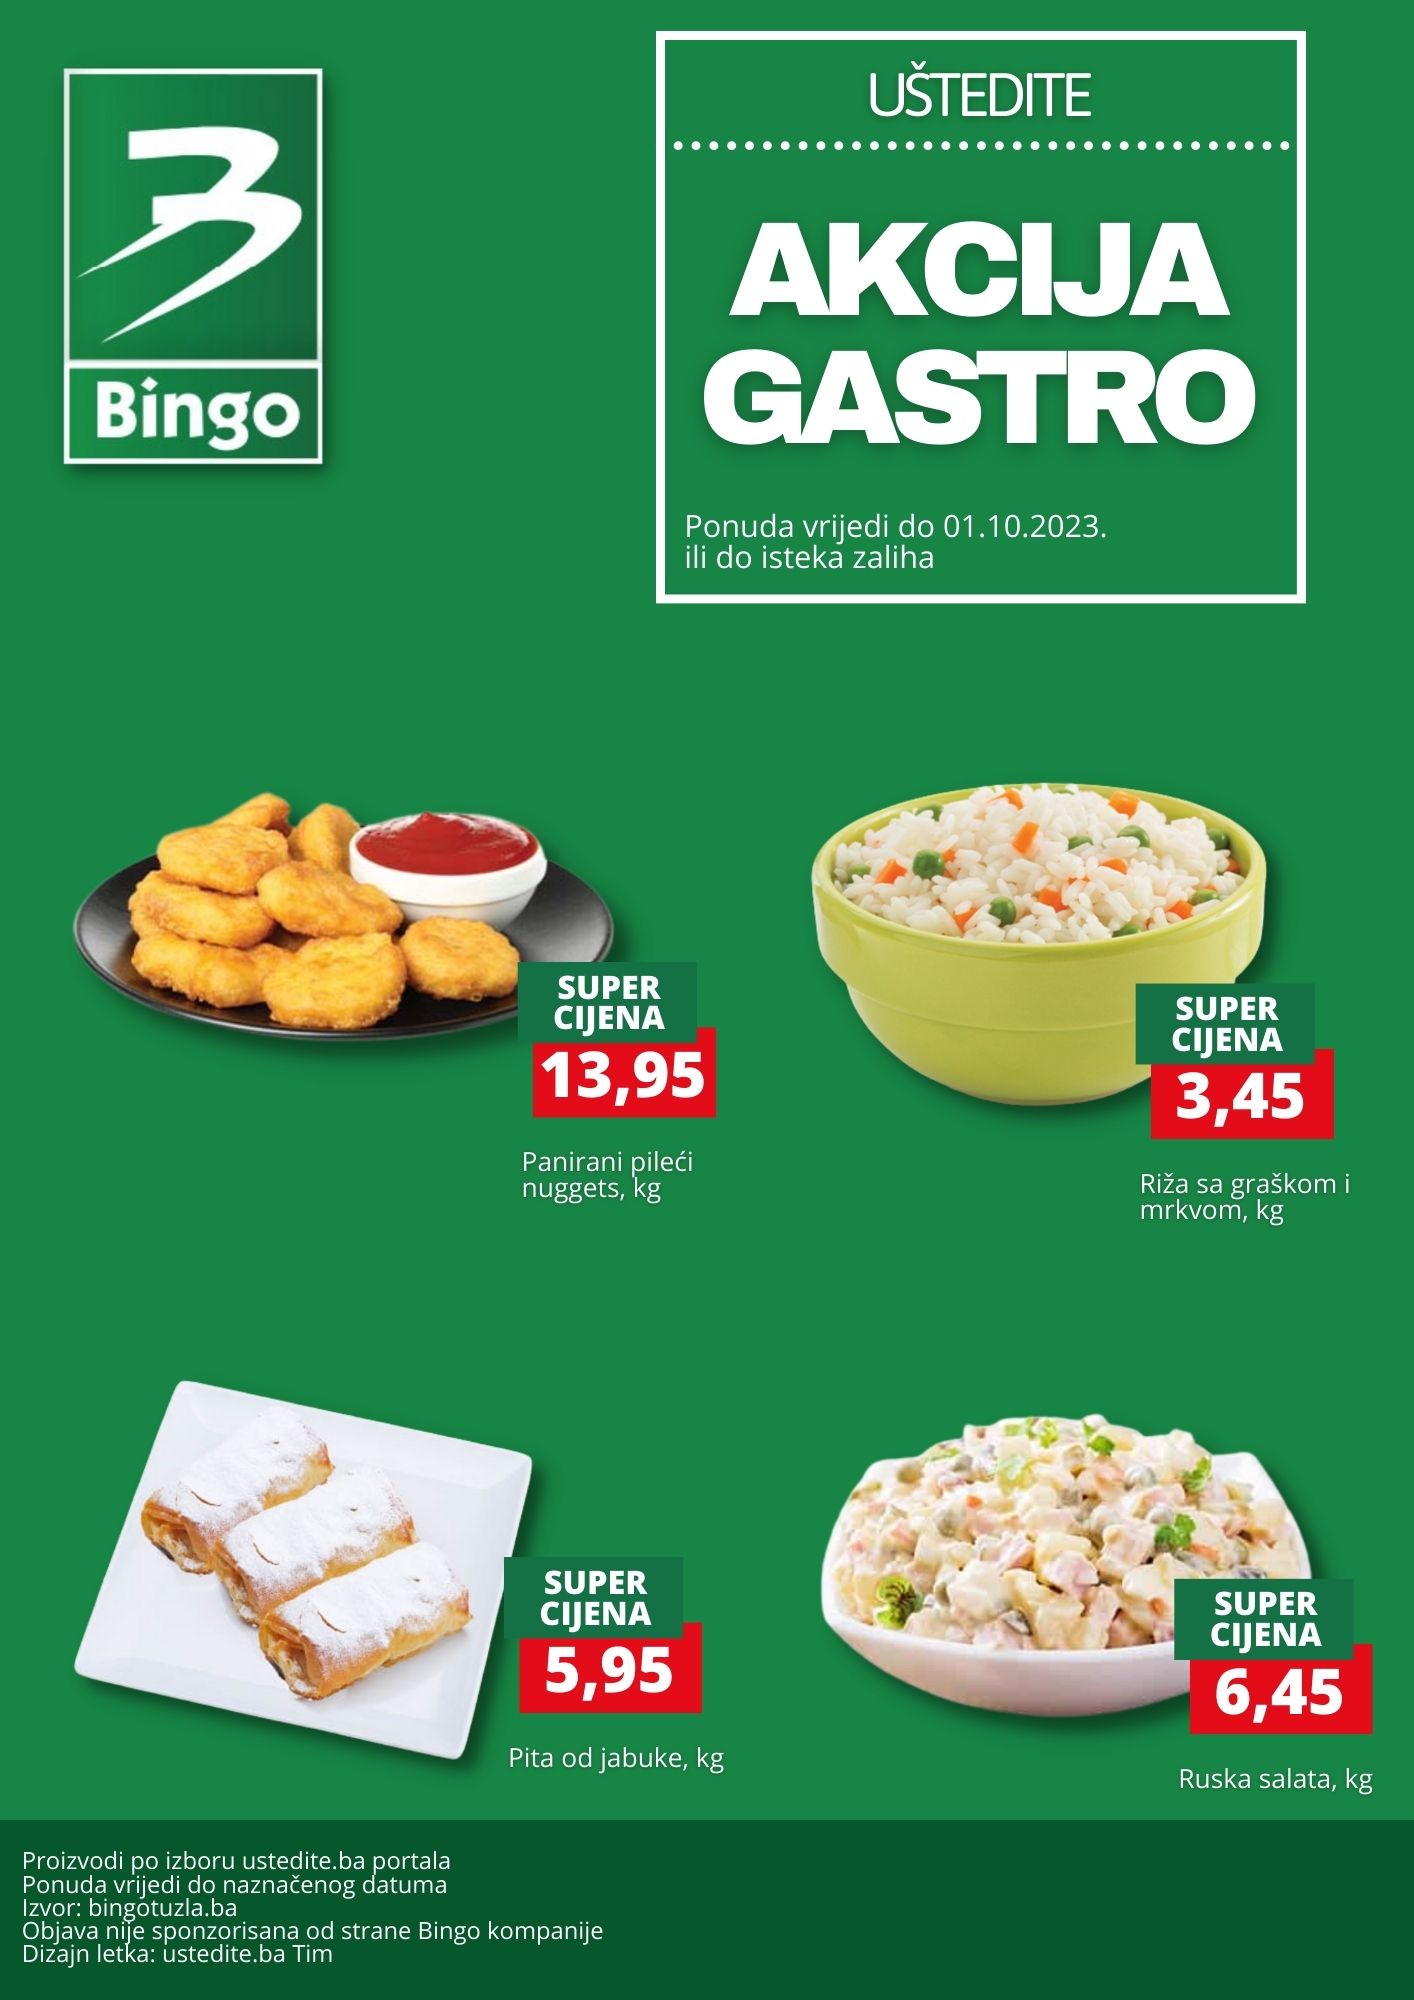 Bingo akcija GASTRO - Gotova jela već od 3,45 KM - sniženje do 1.10.2023. 